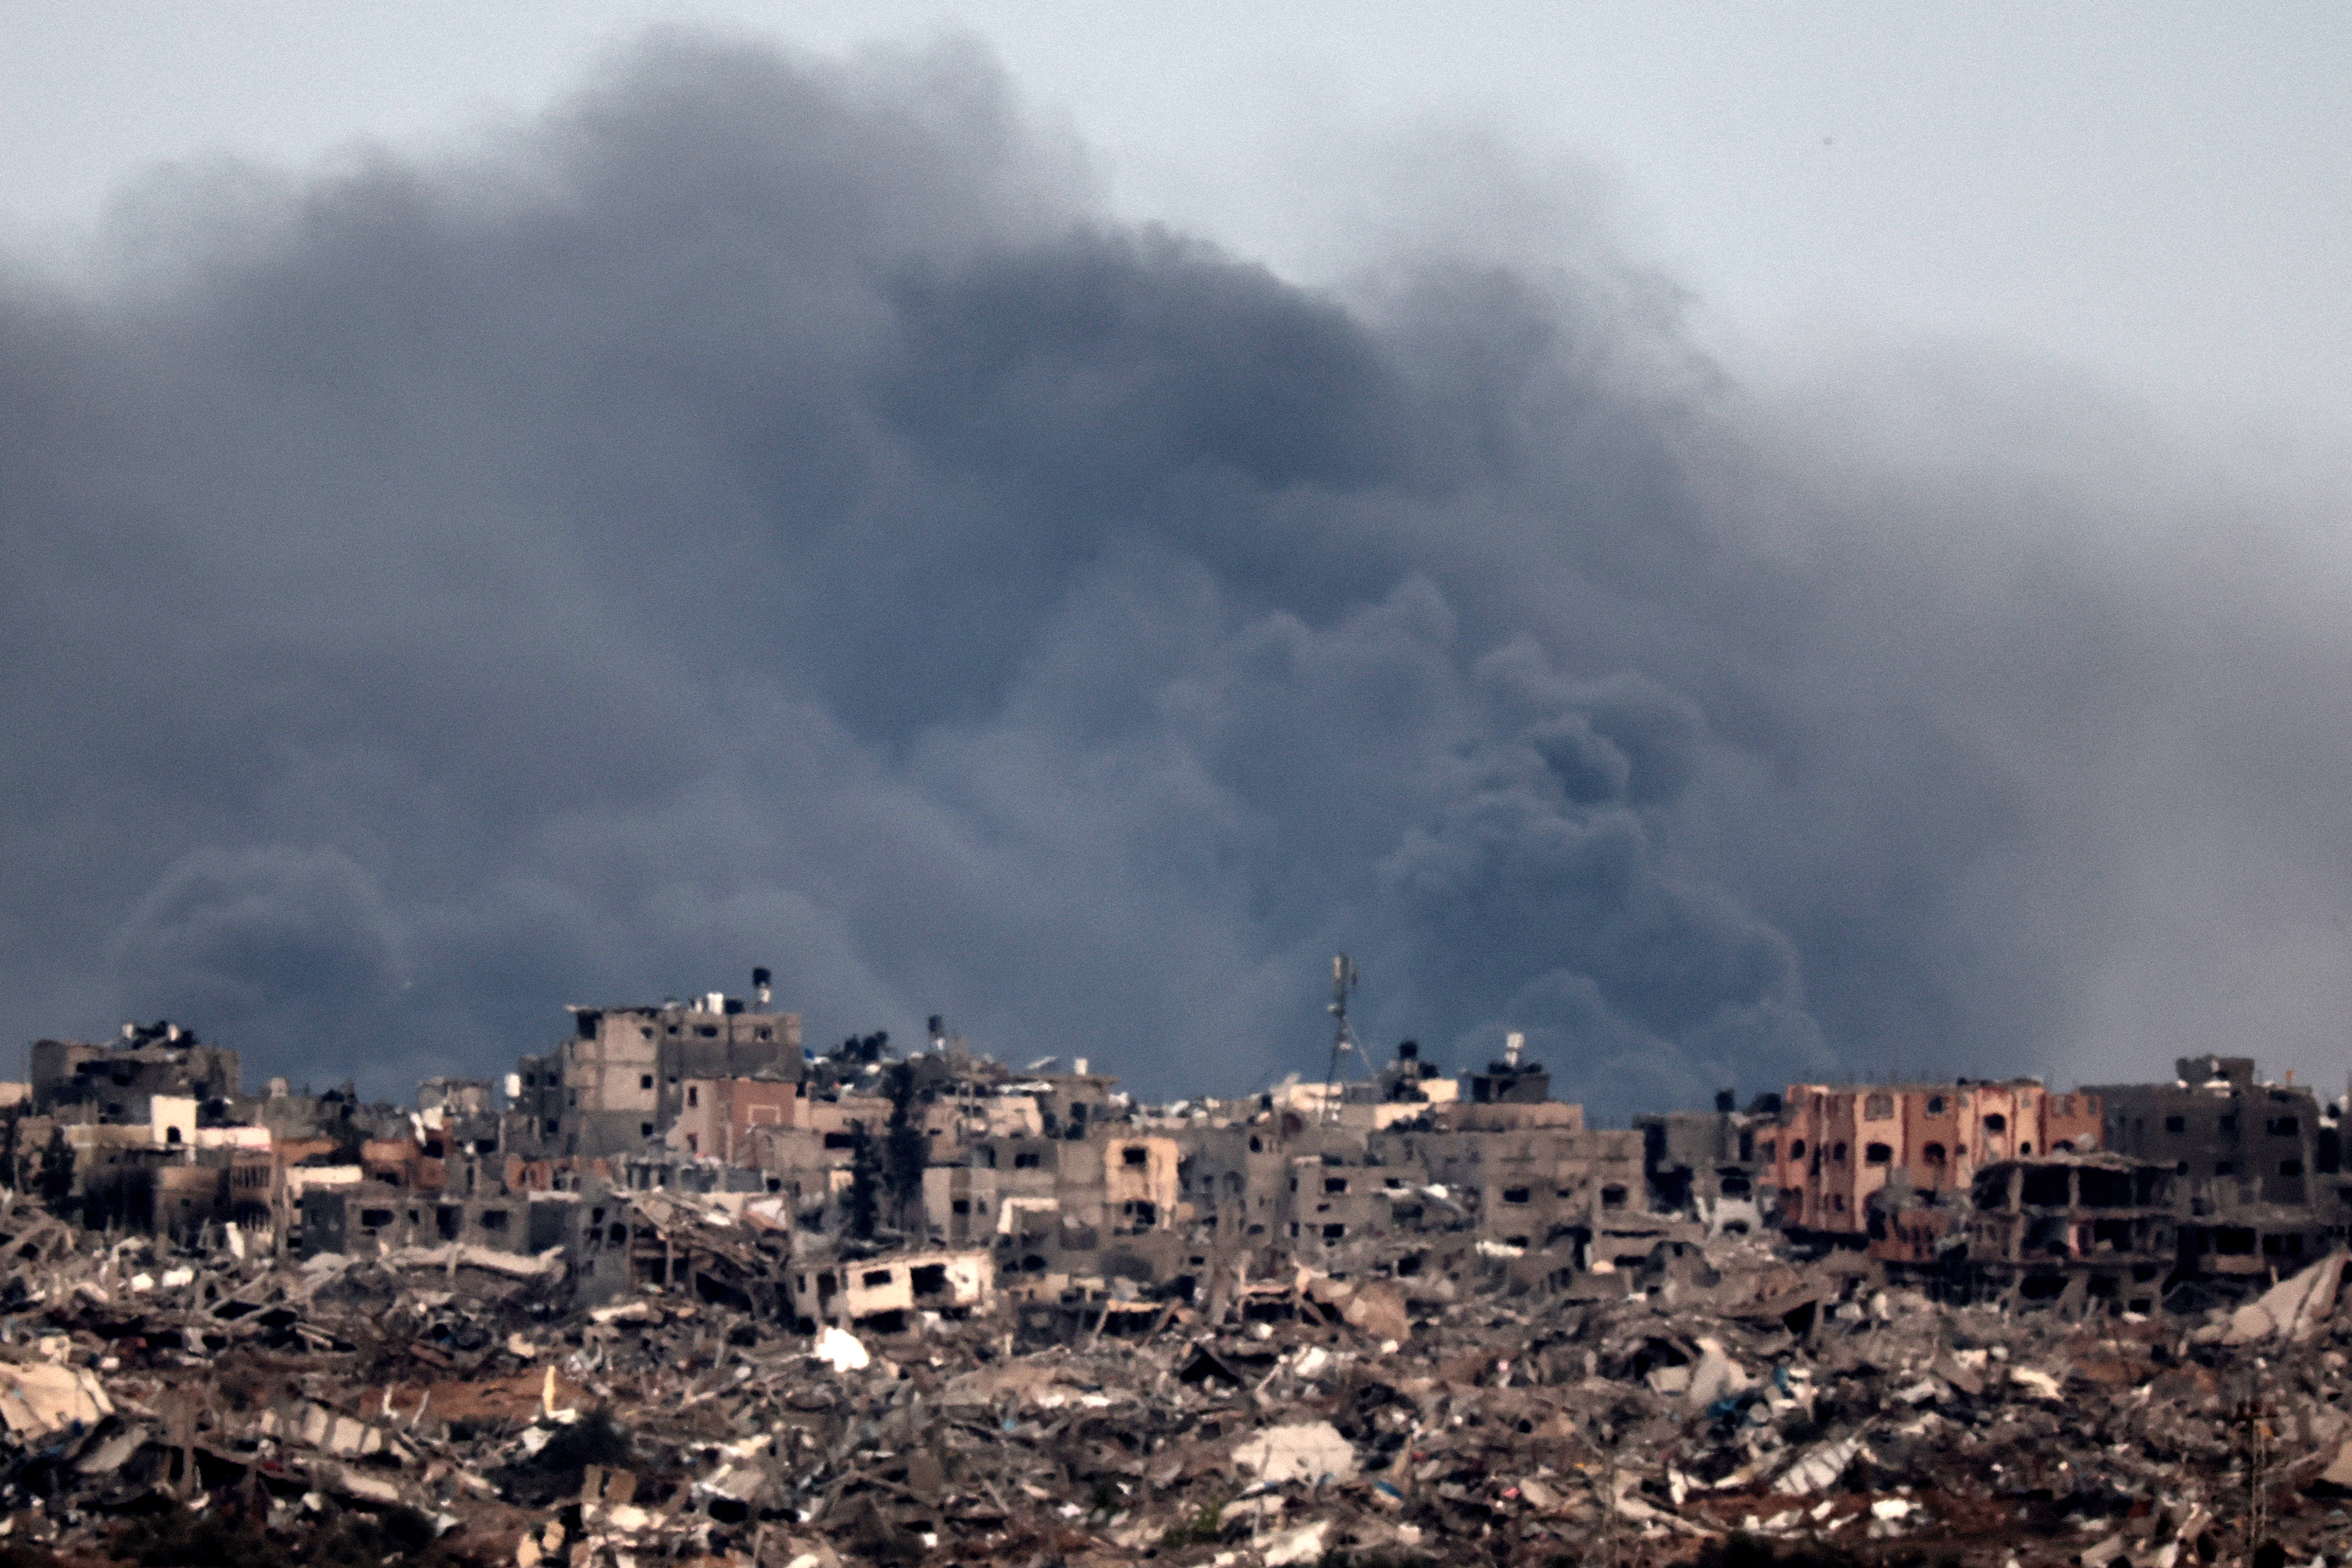 Der vorübergehende Waffenstillstand hätte es ermöglicht, dringend benötigte humanitäre Hilfe in den zerstörten Gazastreifen zu bringen